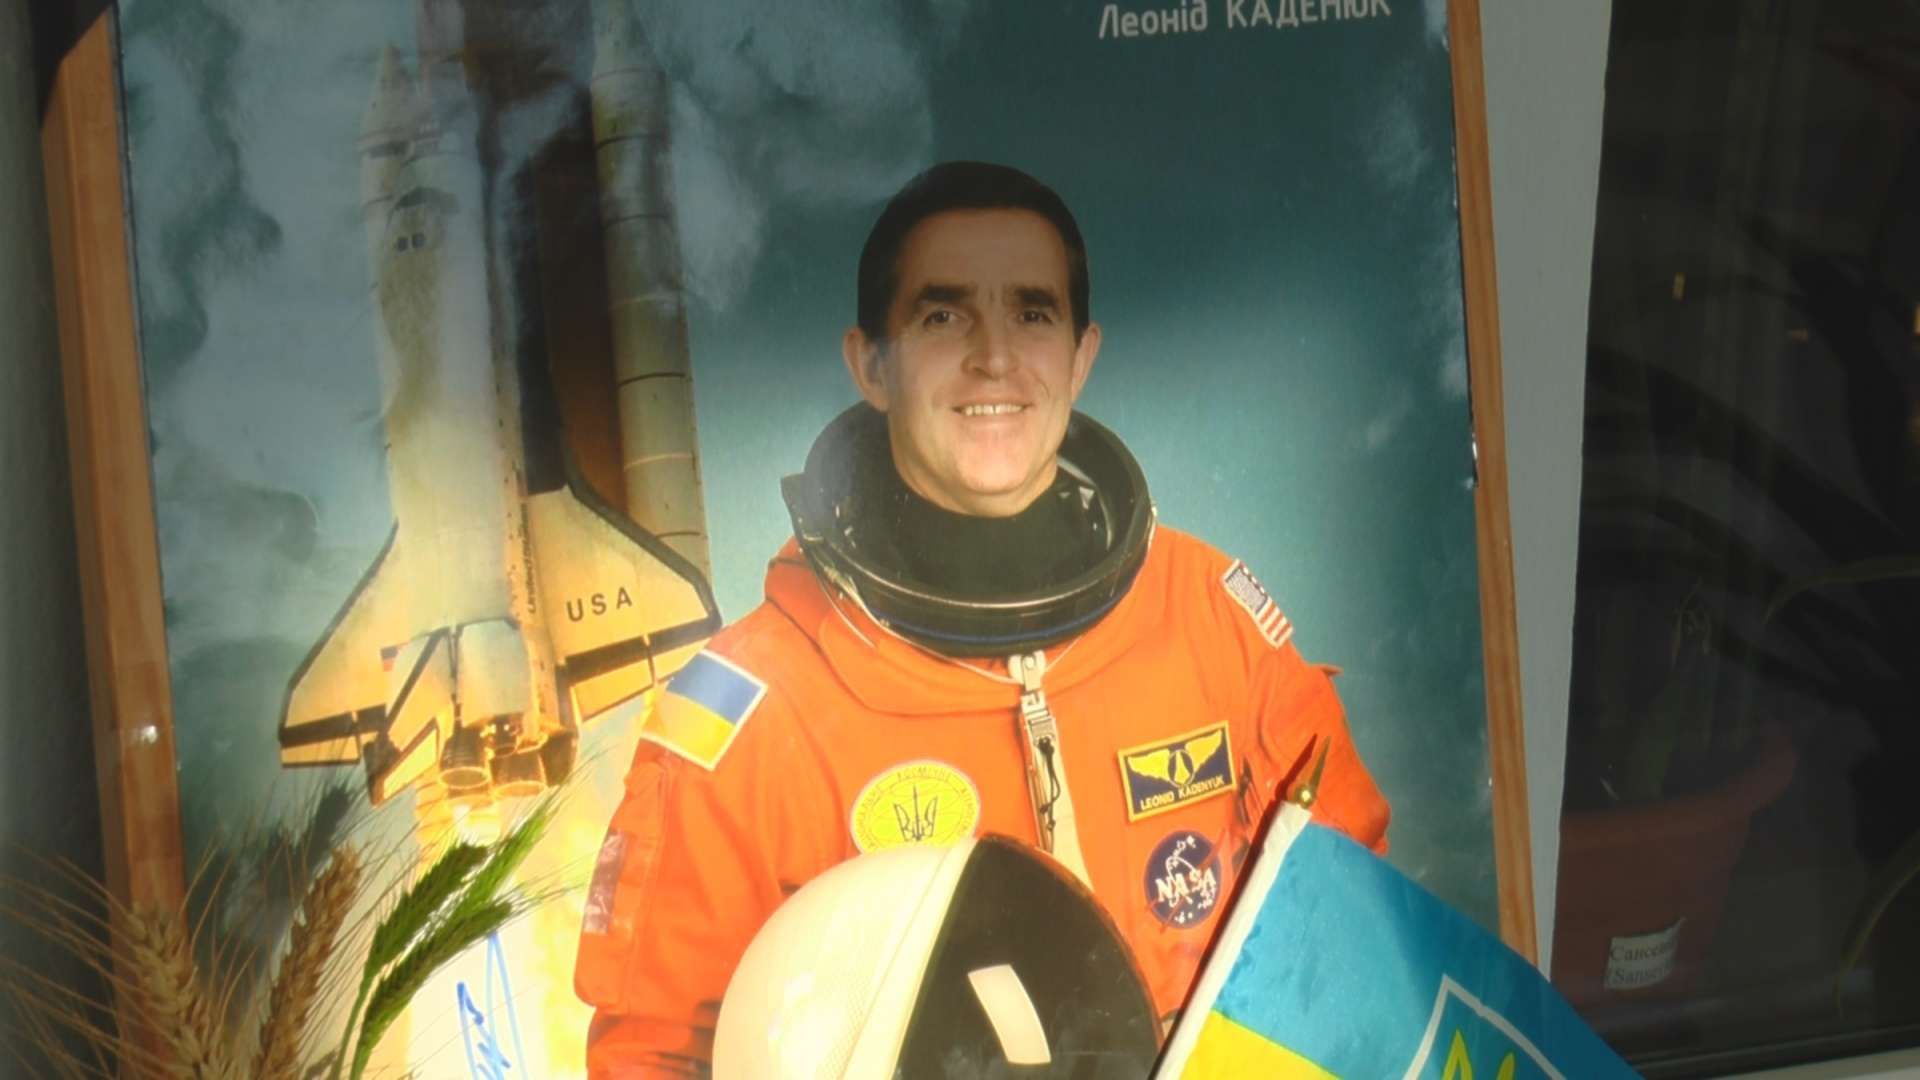 Леонід Каденюк: біографія, цікаві факти про космонавта